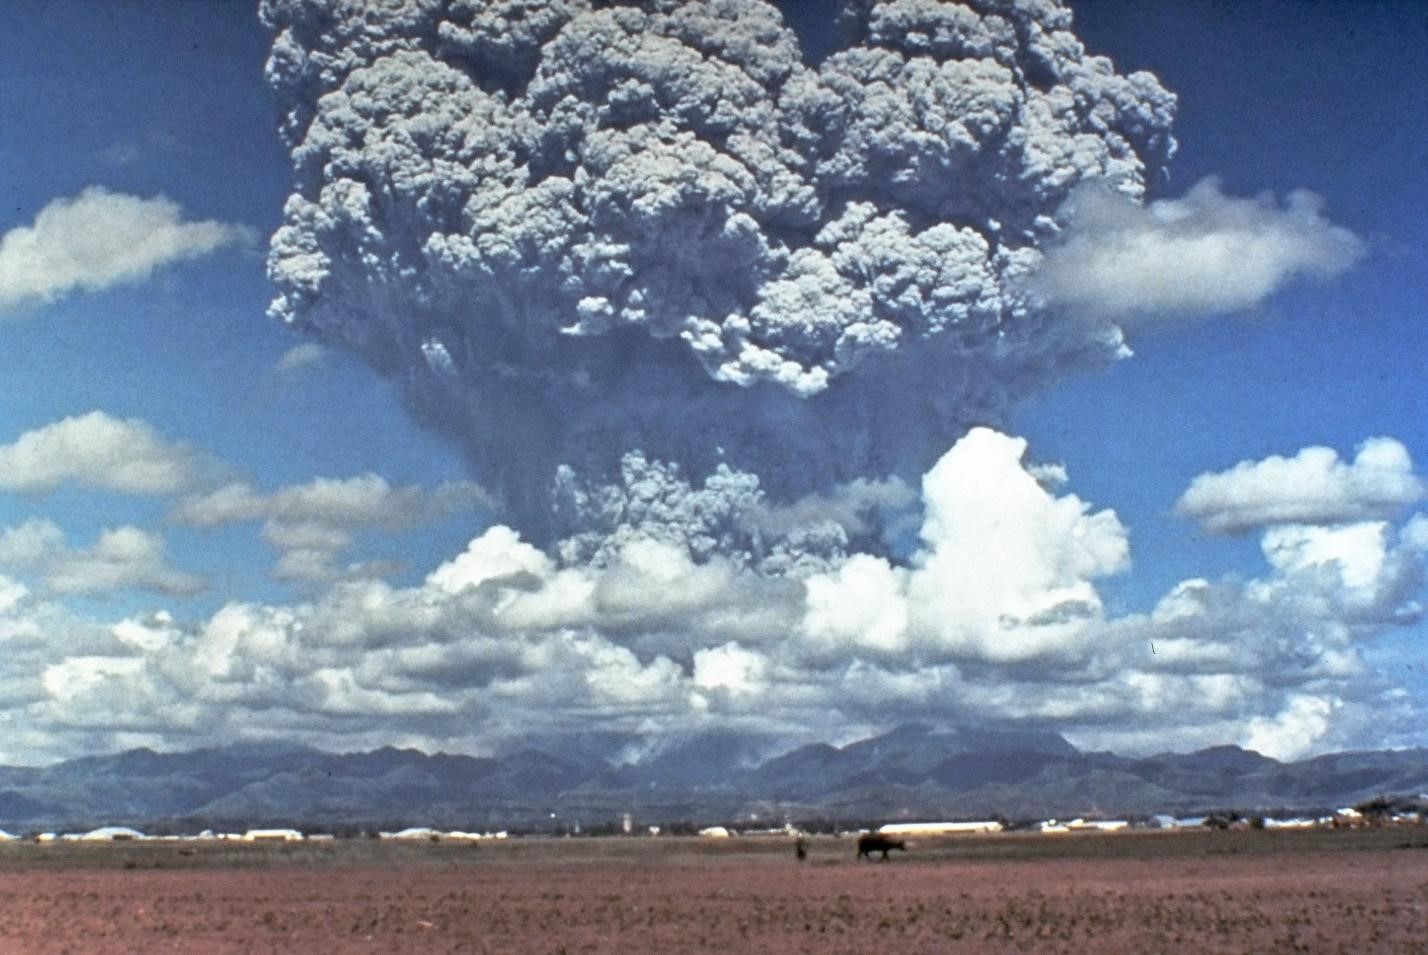 فاجعة بركان توبا: هل شارفت البشرية على الانقراض؟